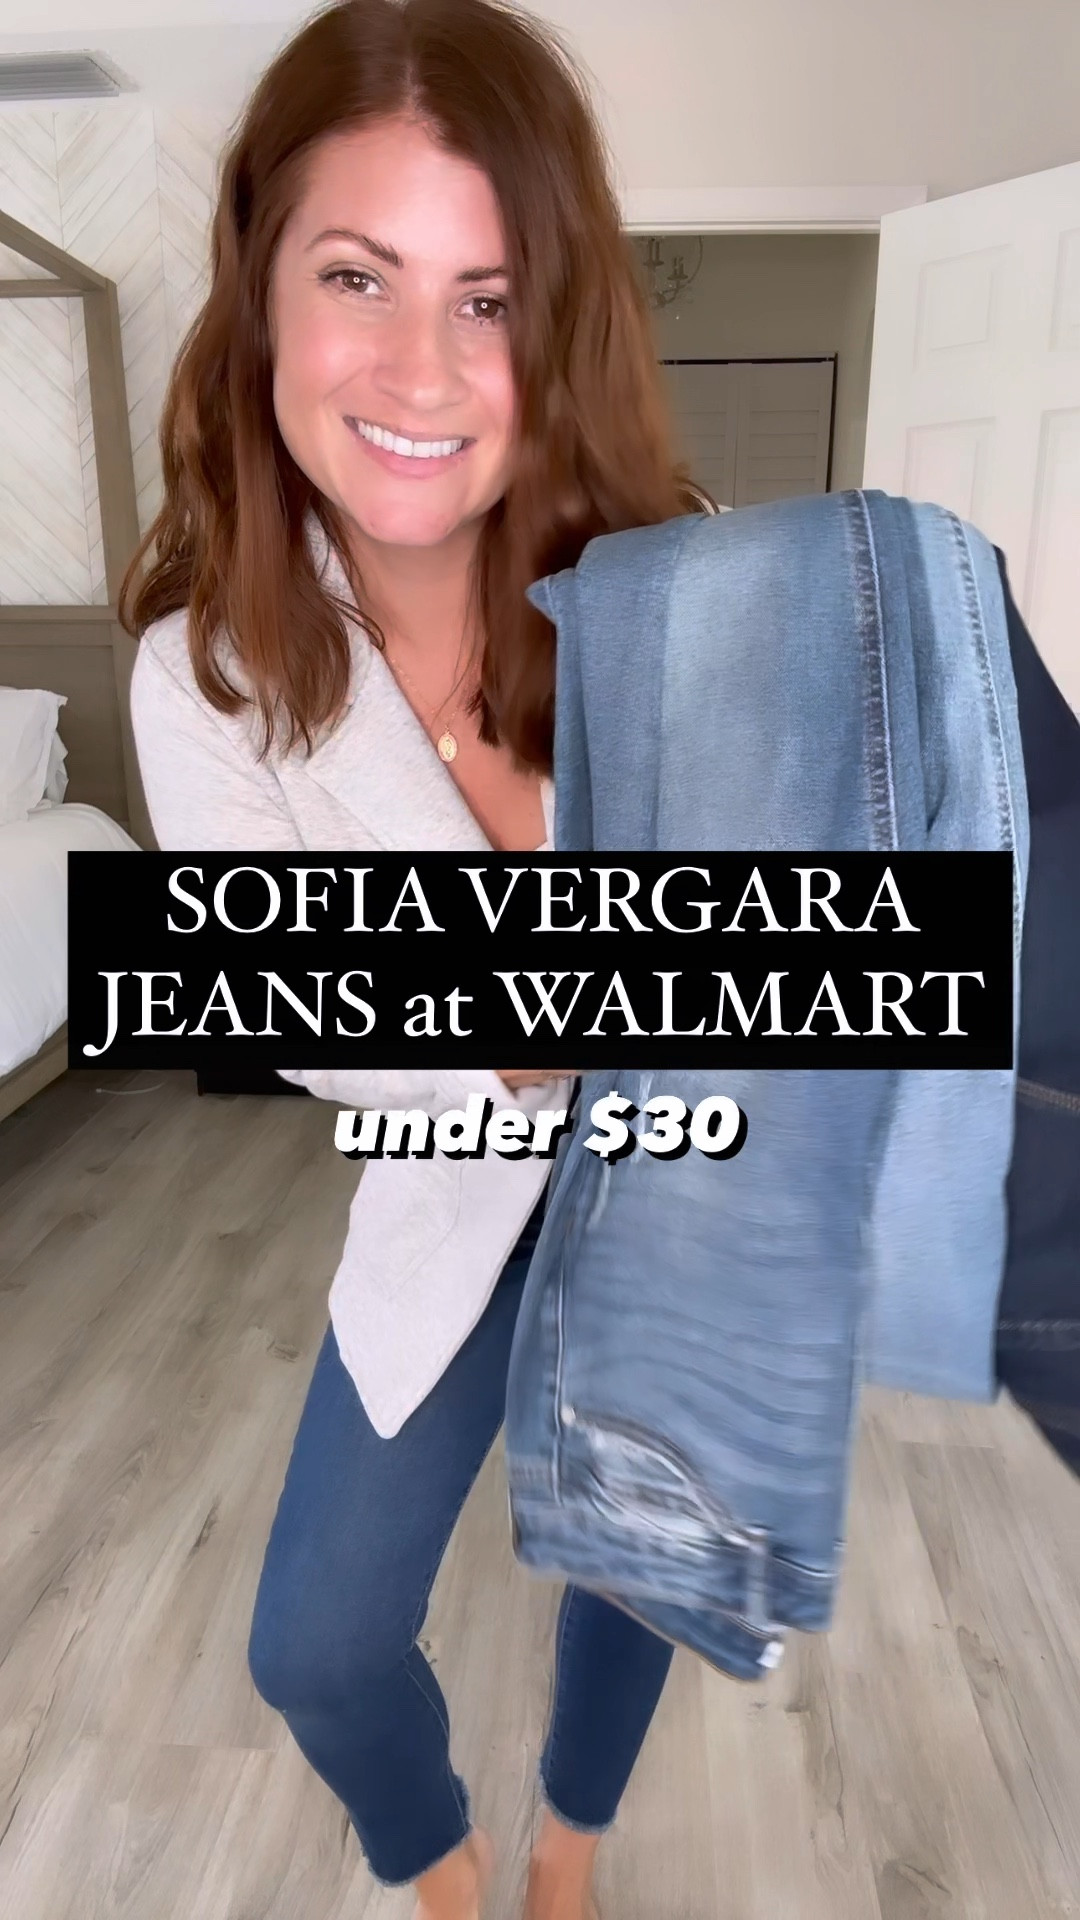 Sofia Jeans by Sofia Vergara Women's Adora High Rise Curvy